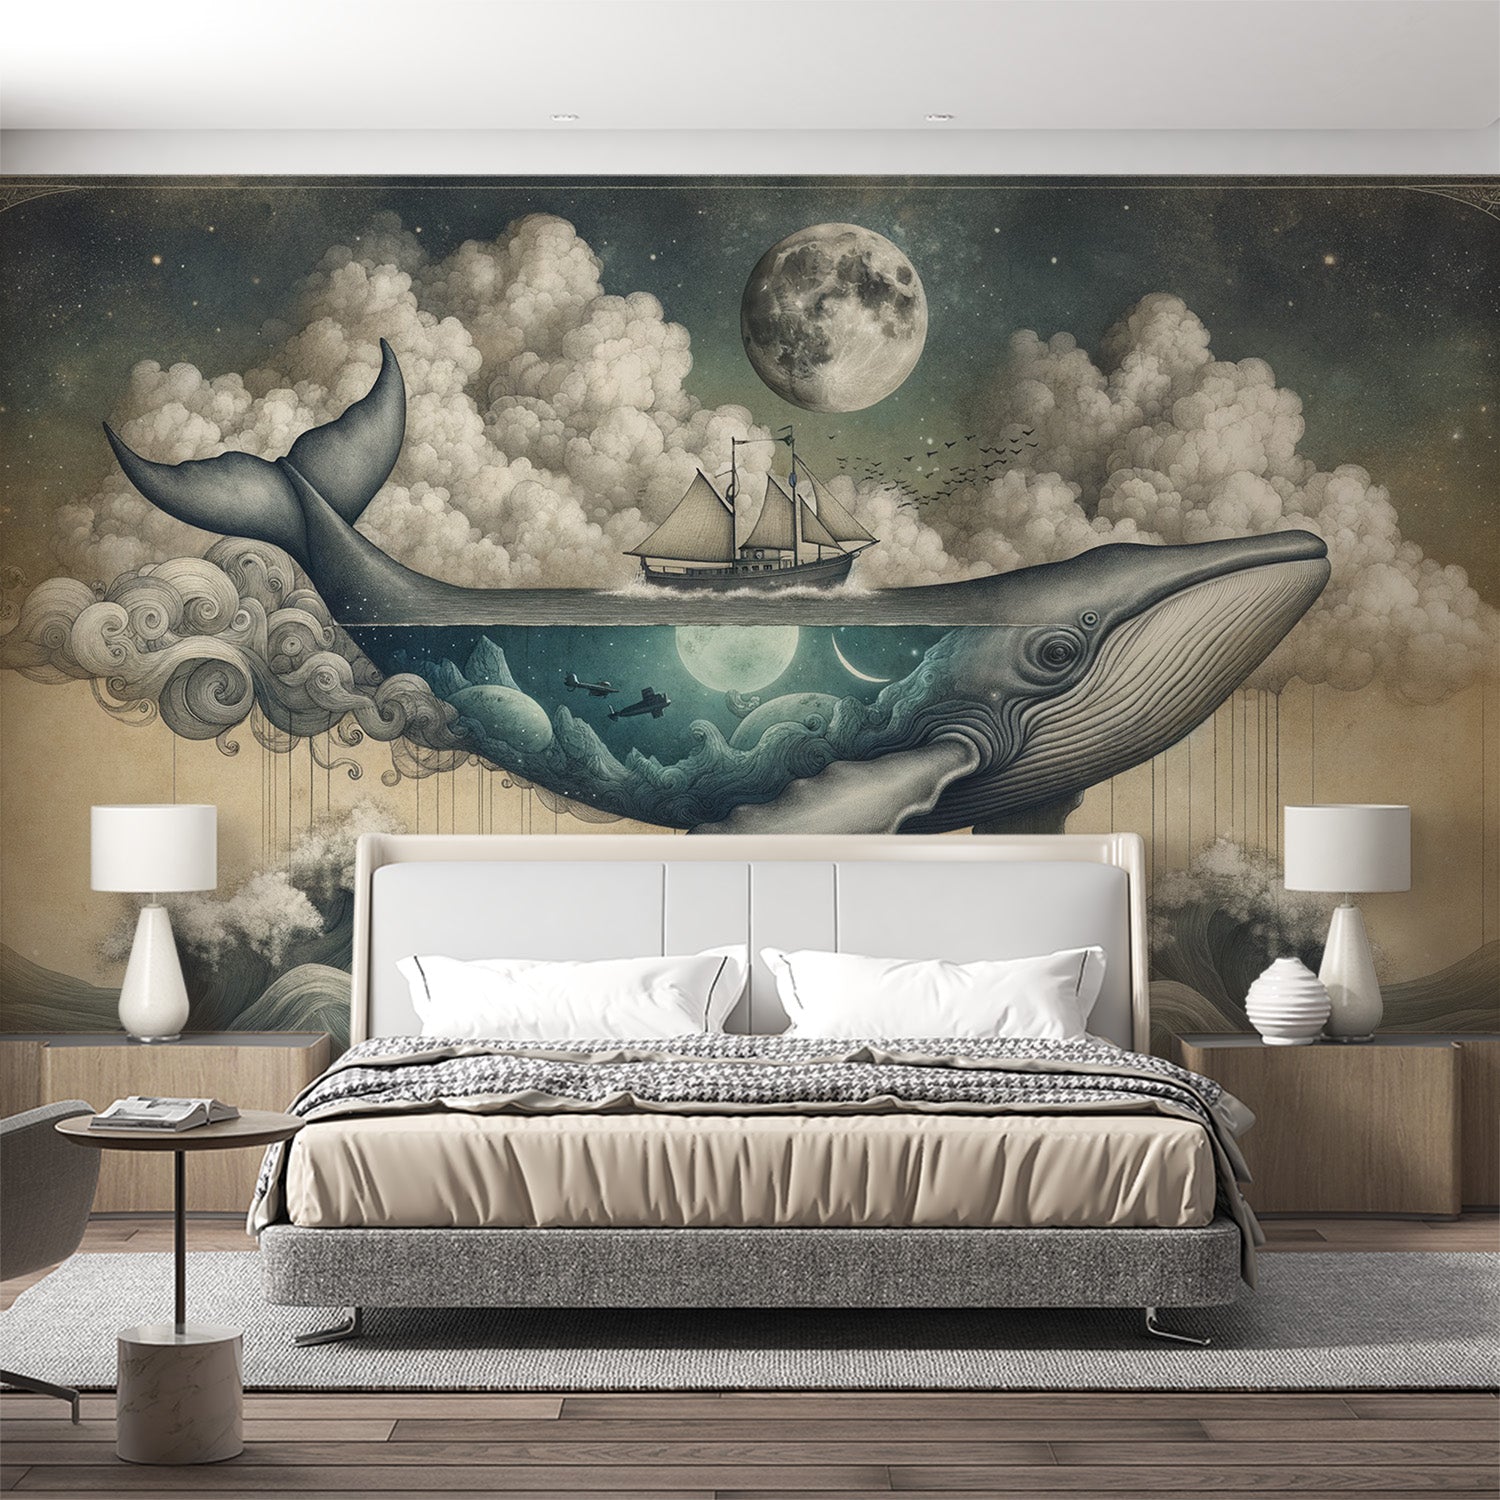  Tapet hval Flyvende hval, skib og måne på baggrund af nattetid og bomuldsskyer